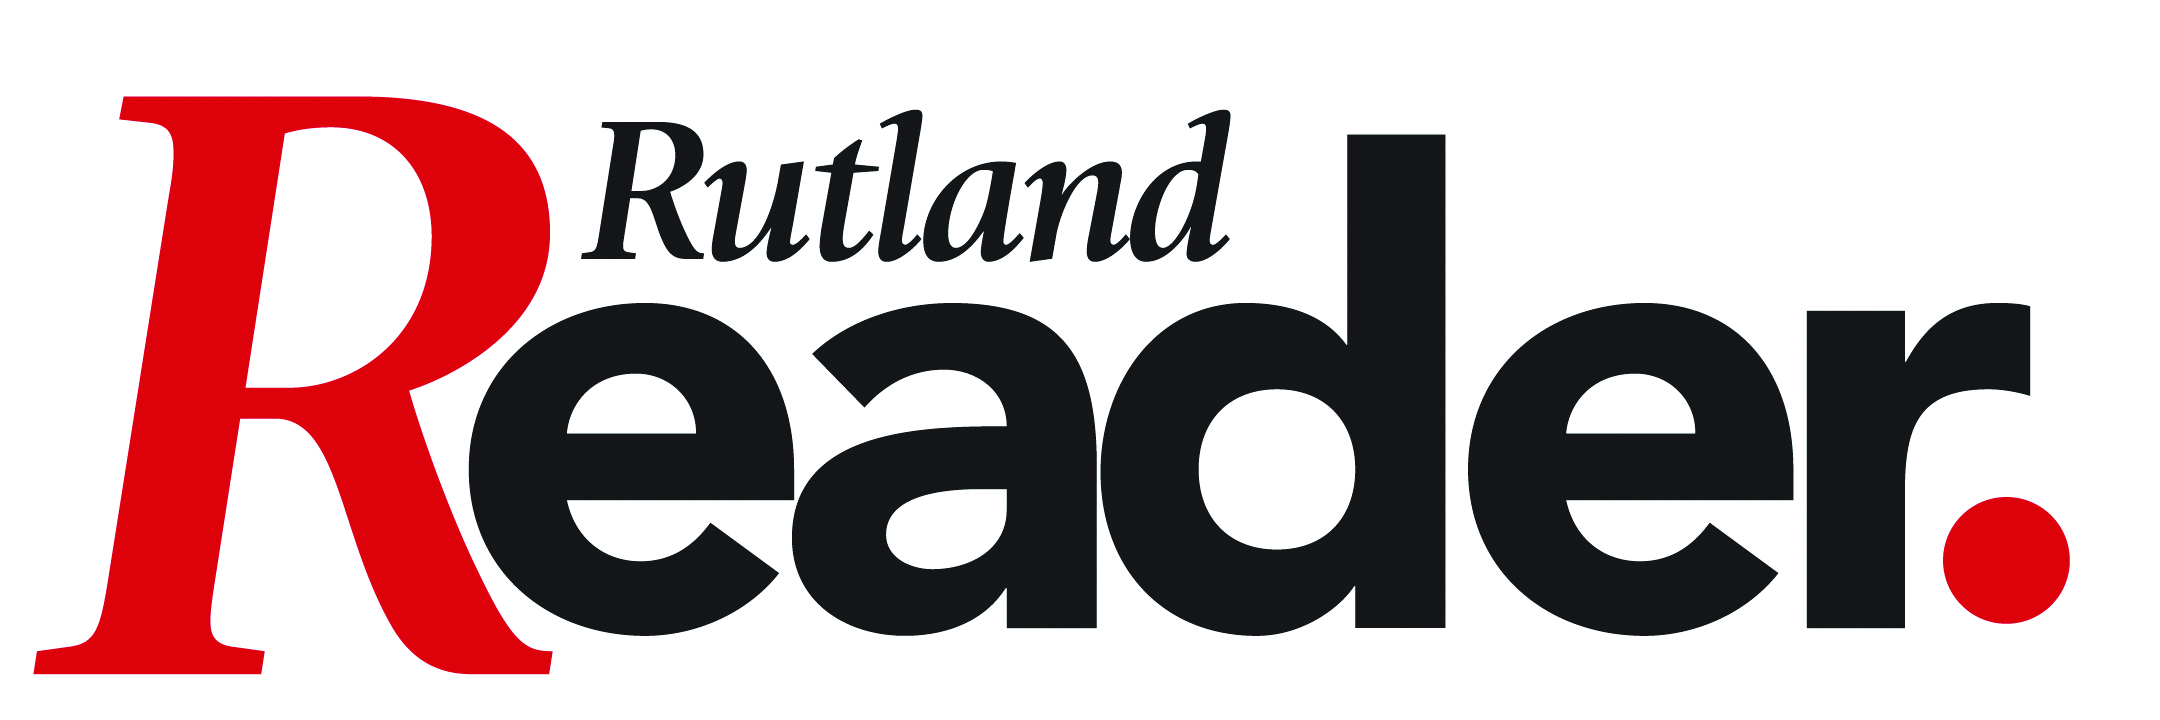 rutlandreader_logo